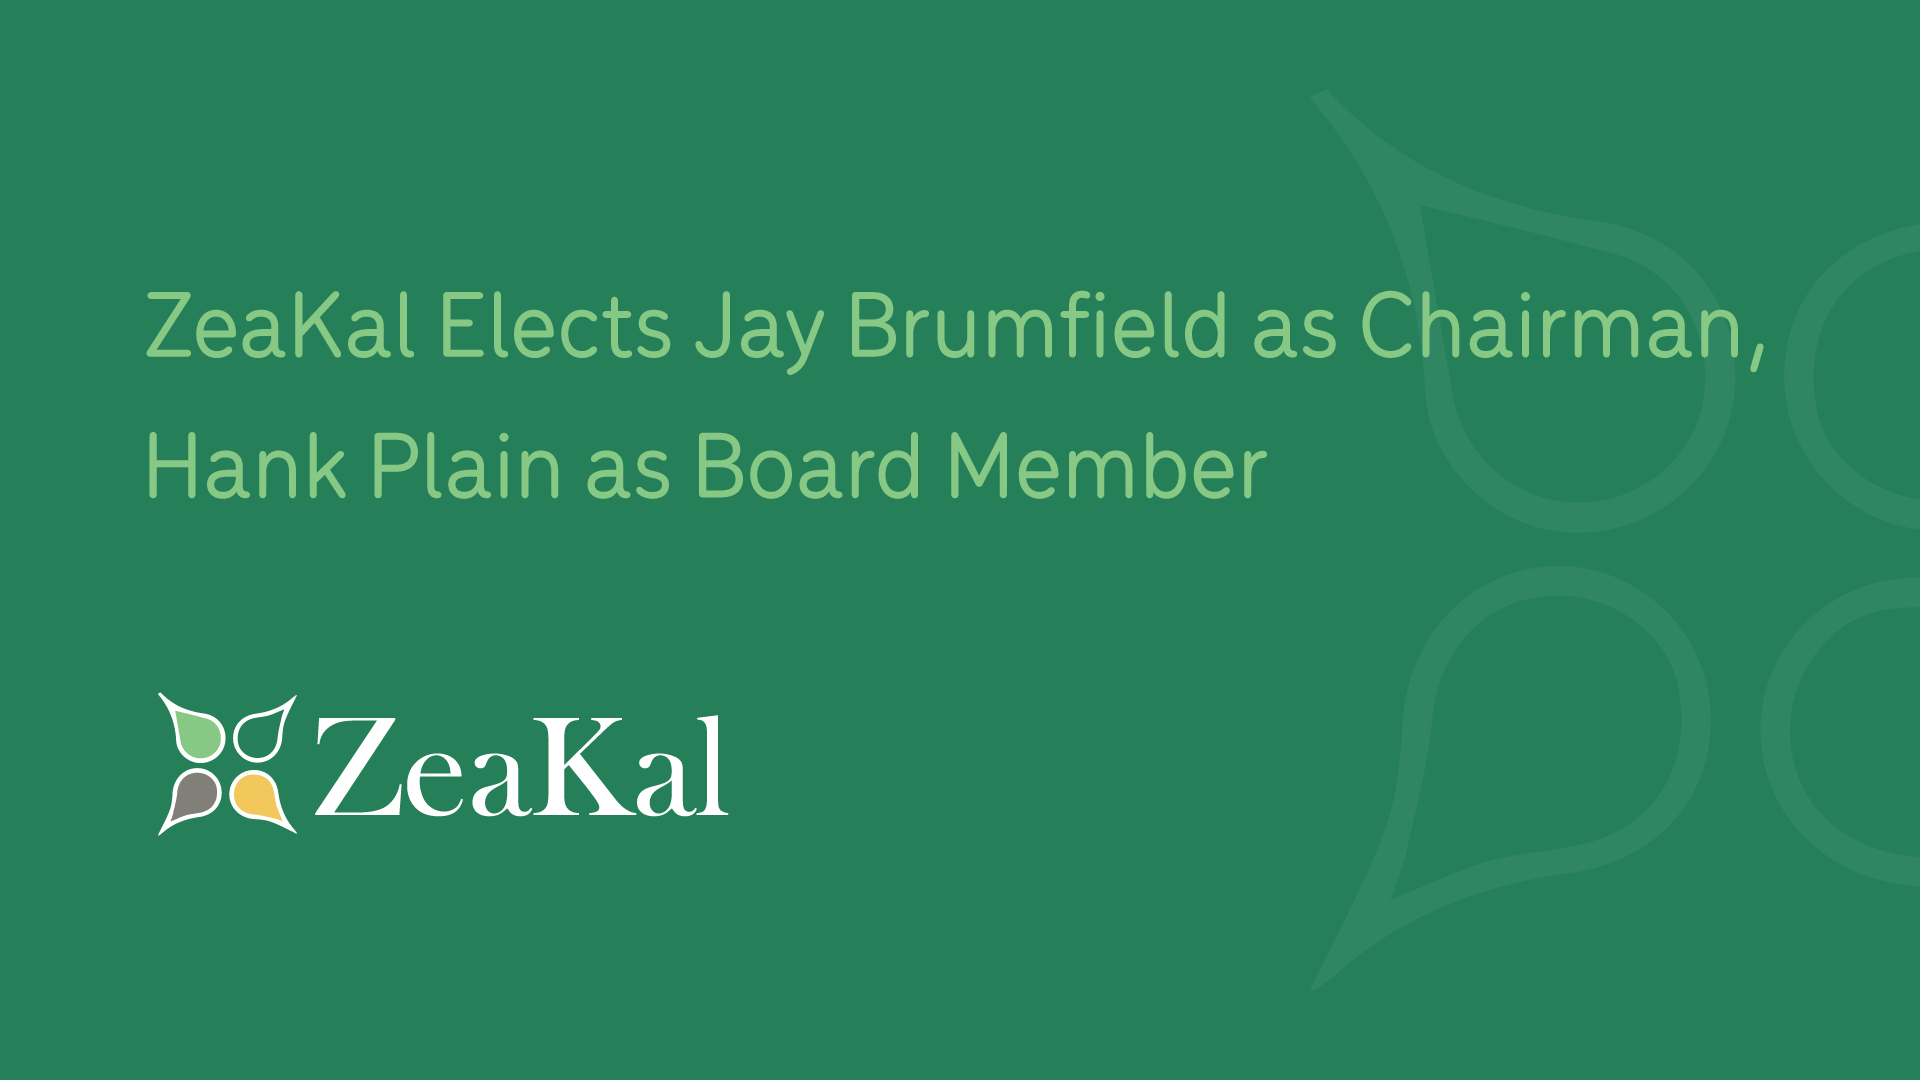 ZeaKal elects Jay Brumfield as Chairman Hank Plain as Board Member